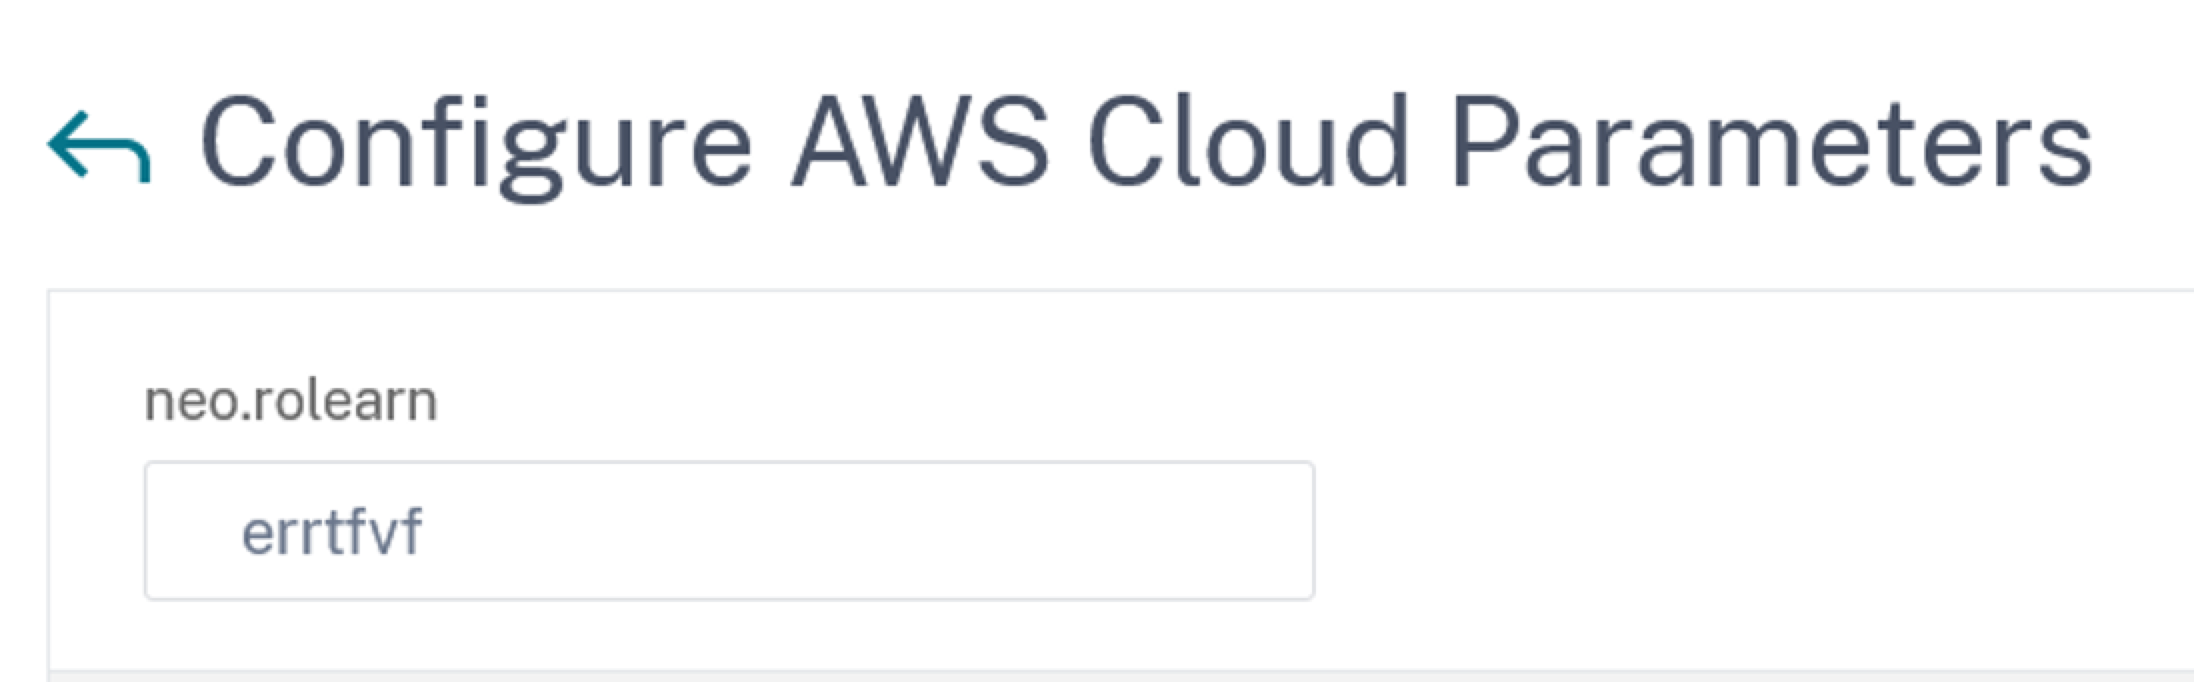 Konfigurieren von AWS Cloud-Parametern